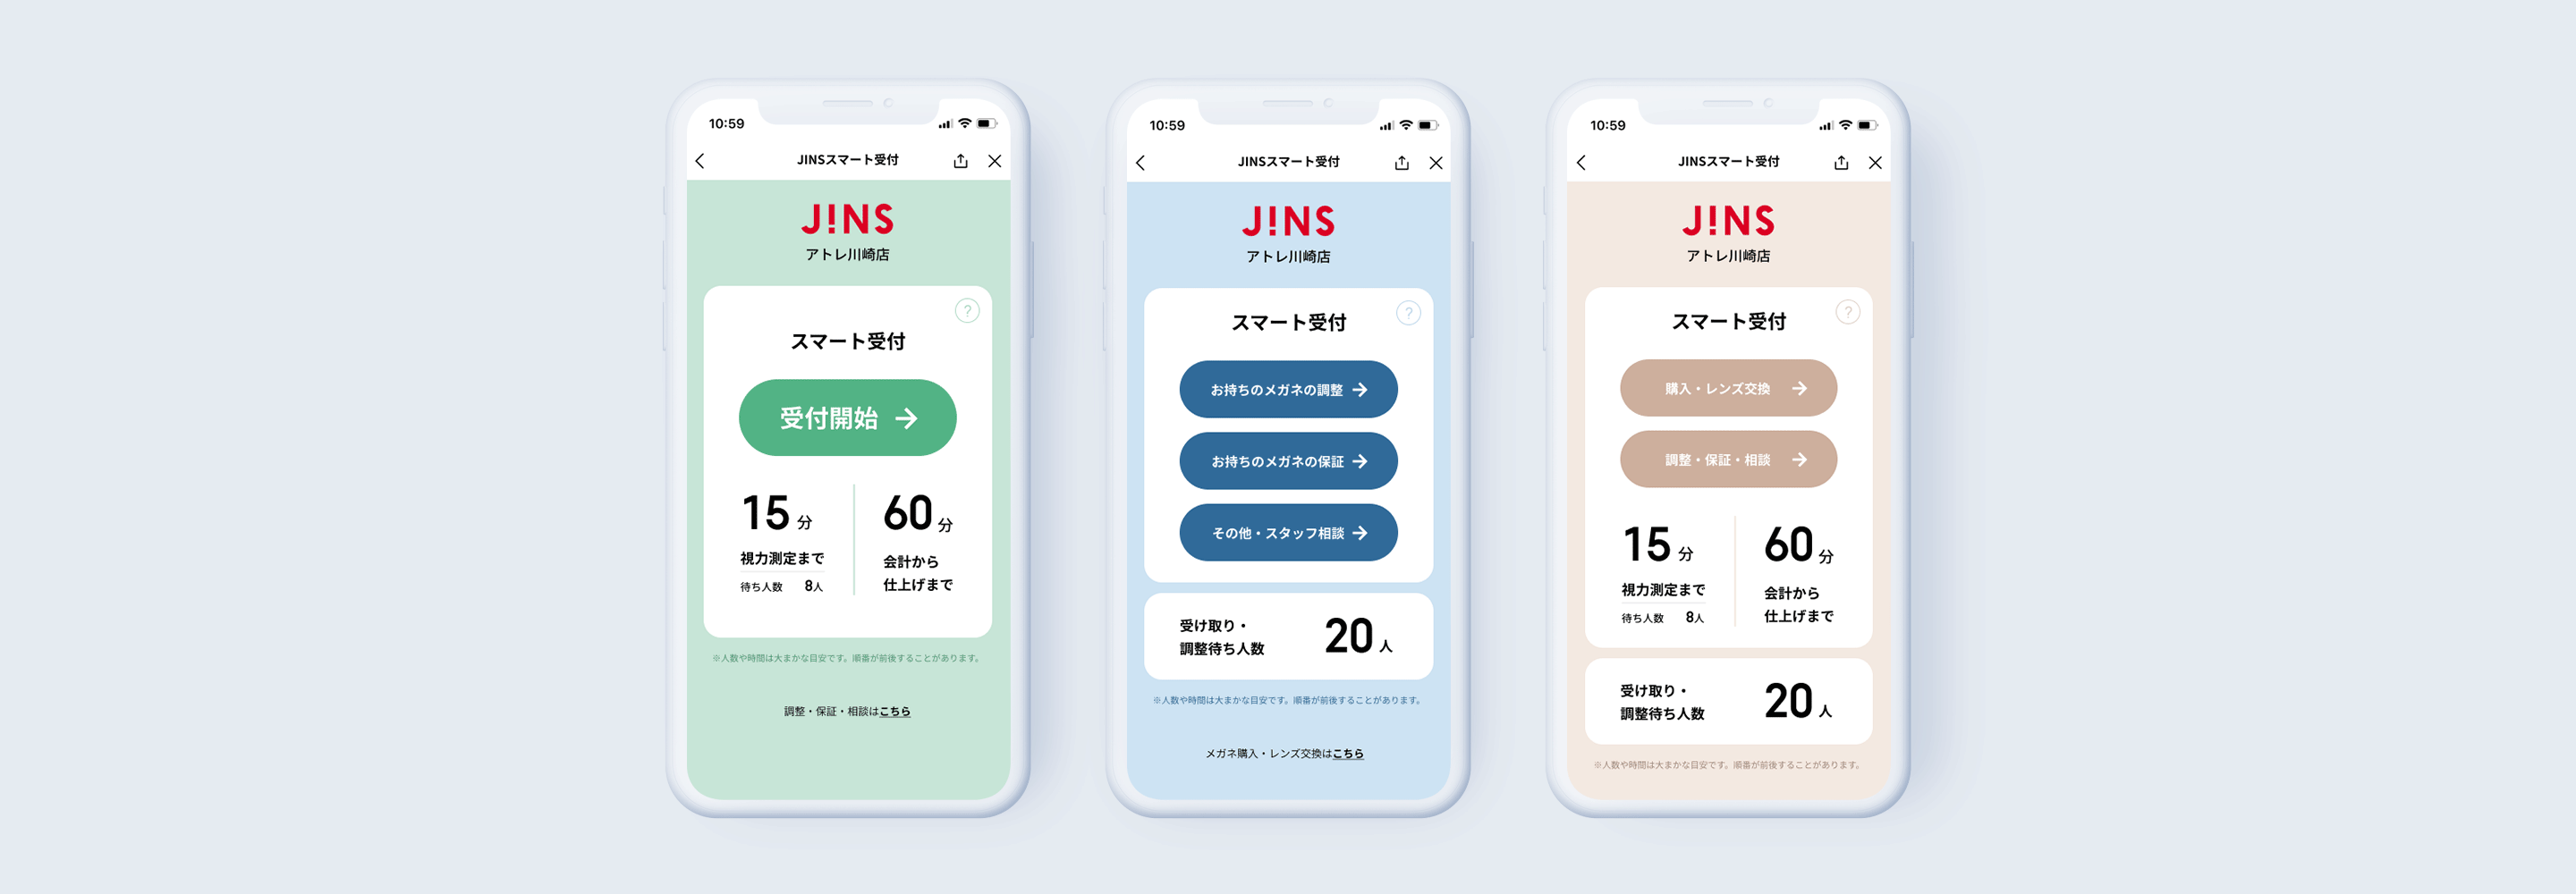 JINS Store UX/UI